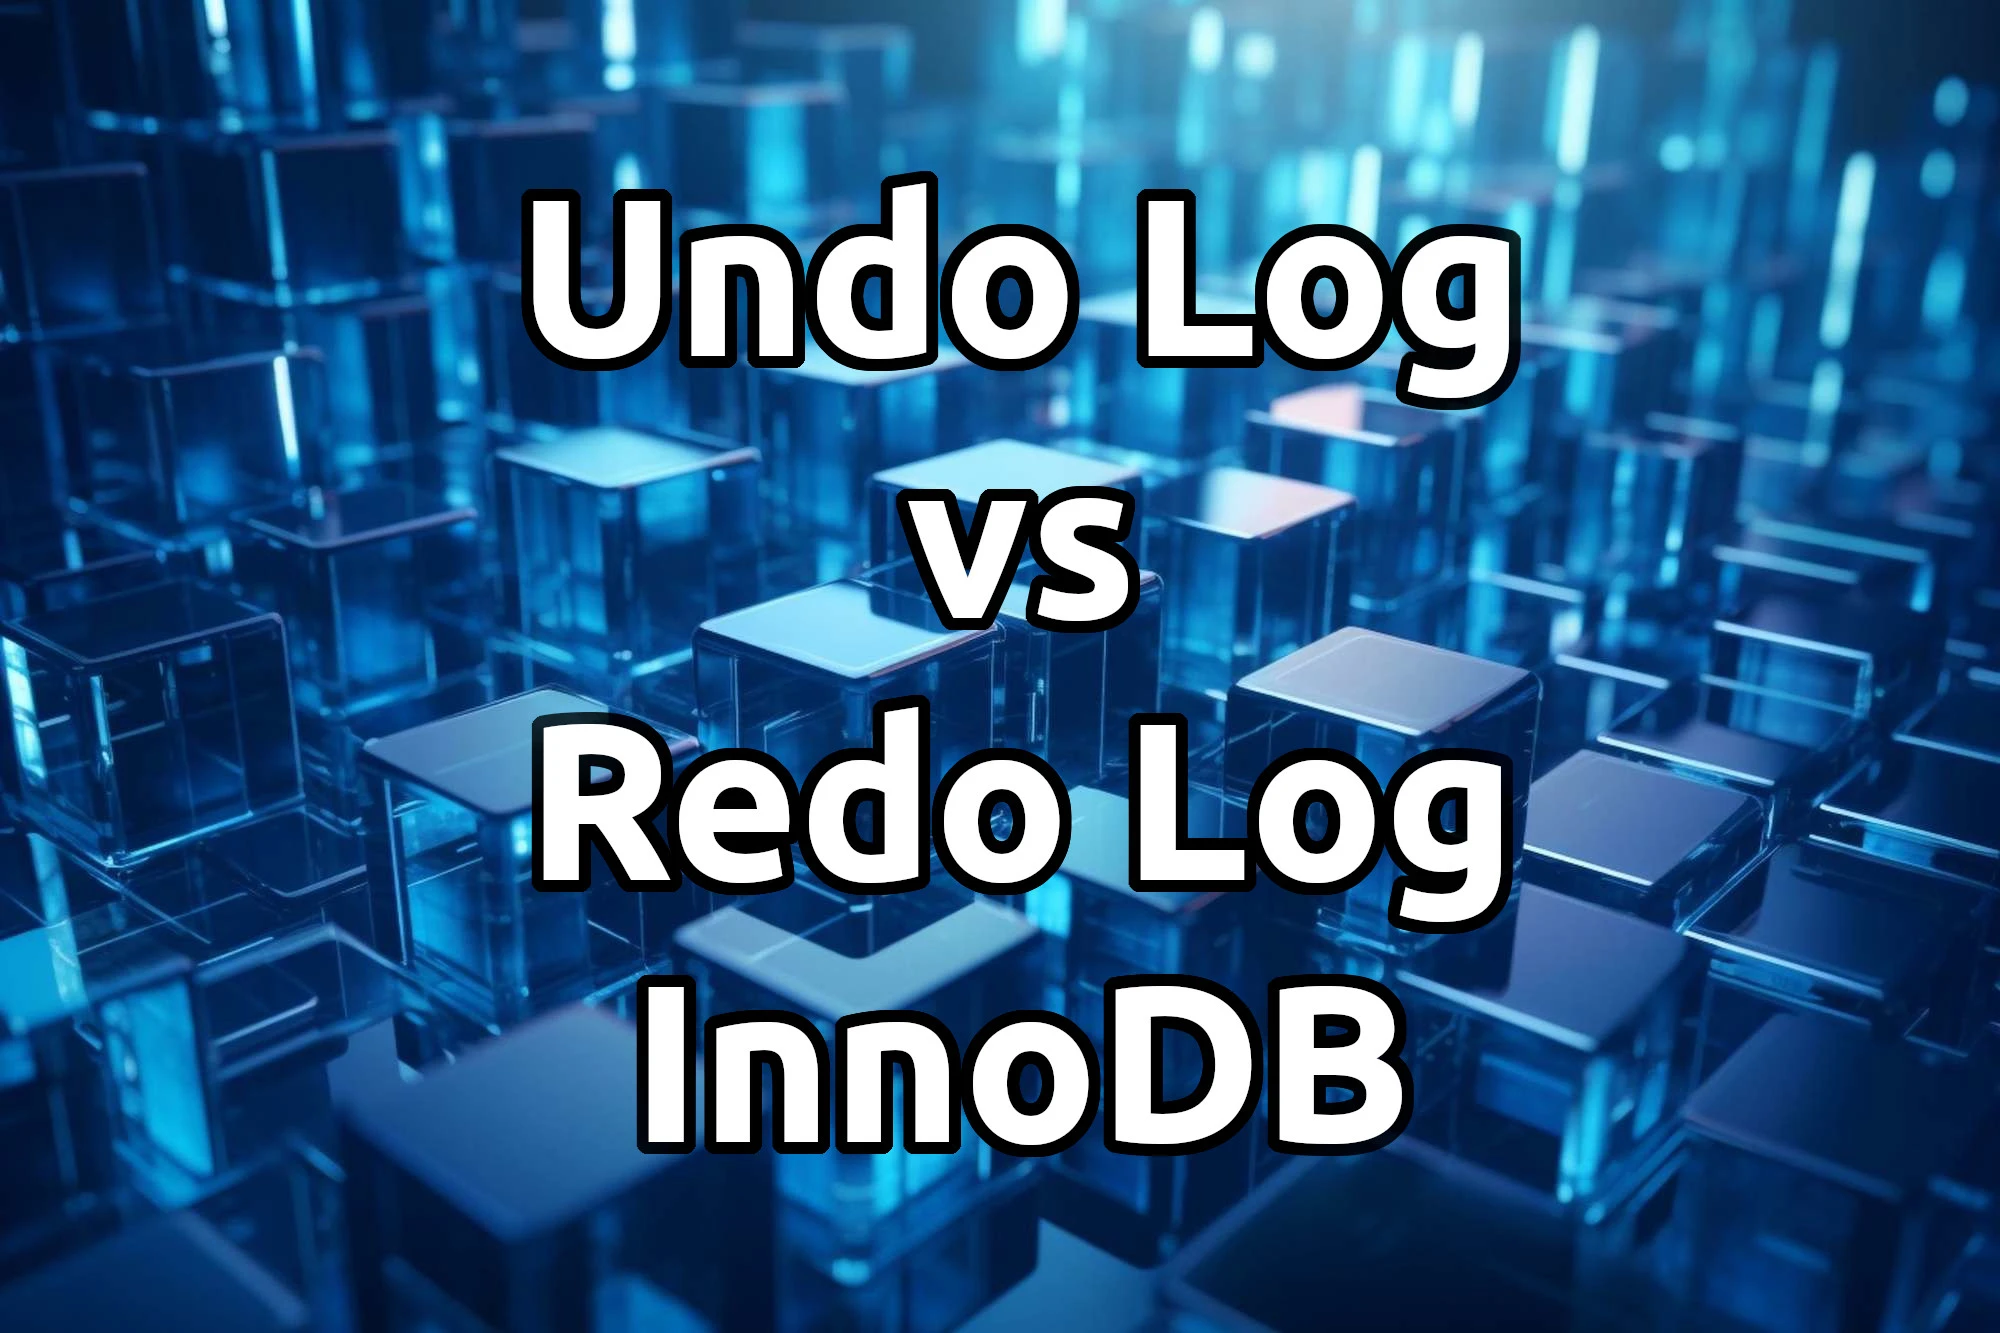 Відмінності між Undo Log та Redo Log в InnoDB